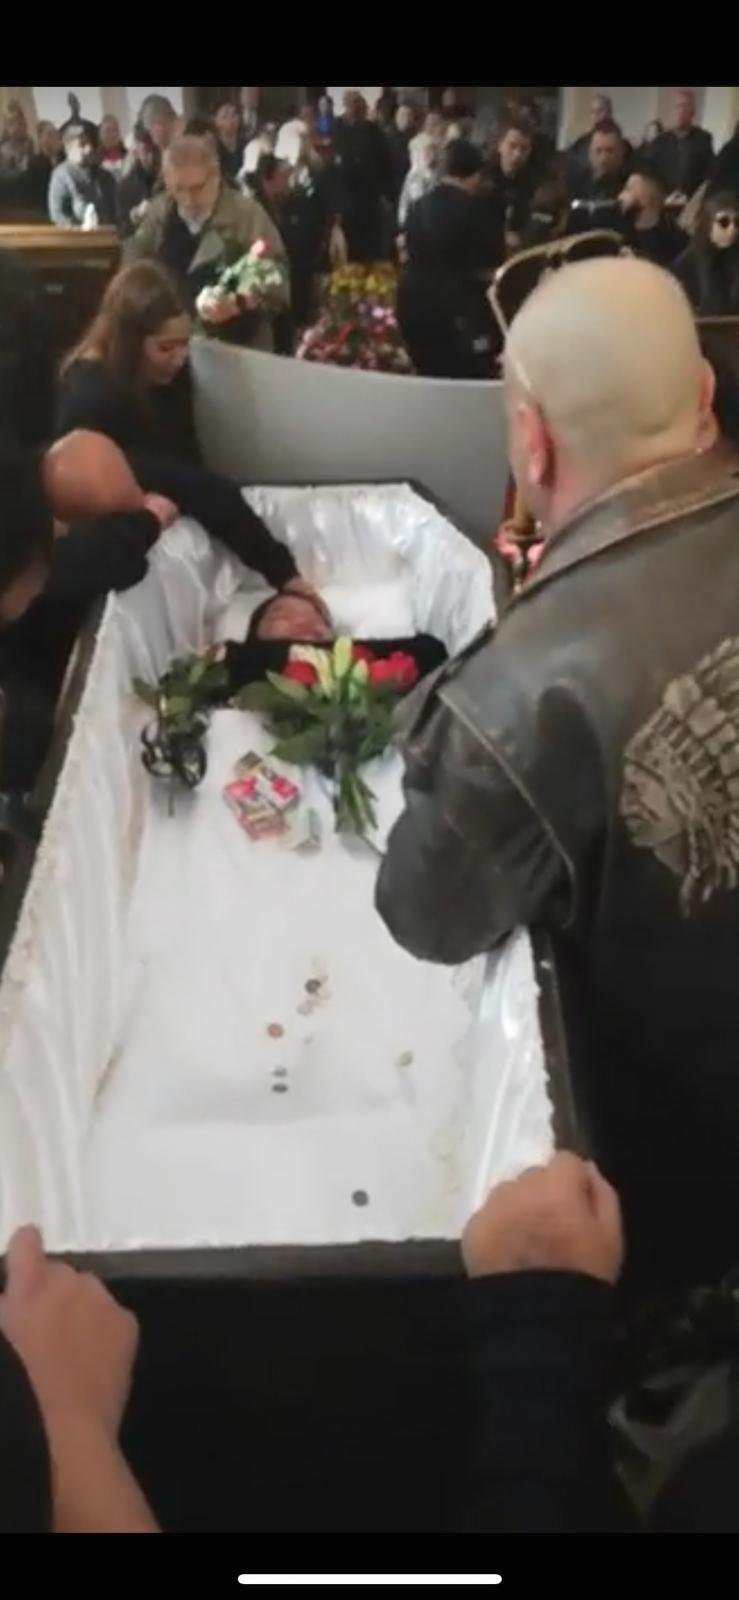 Ještě před koncem obřadu začali dávat smuteční hosté na sociální sítě své fotografie z pohřbu Věry Bílé.